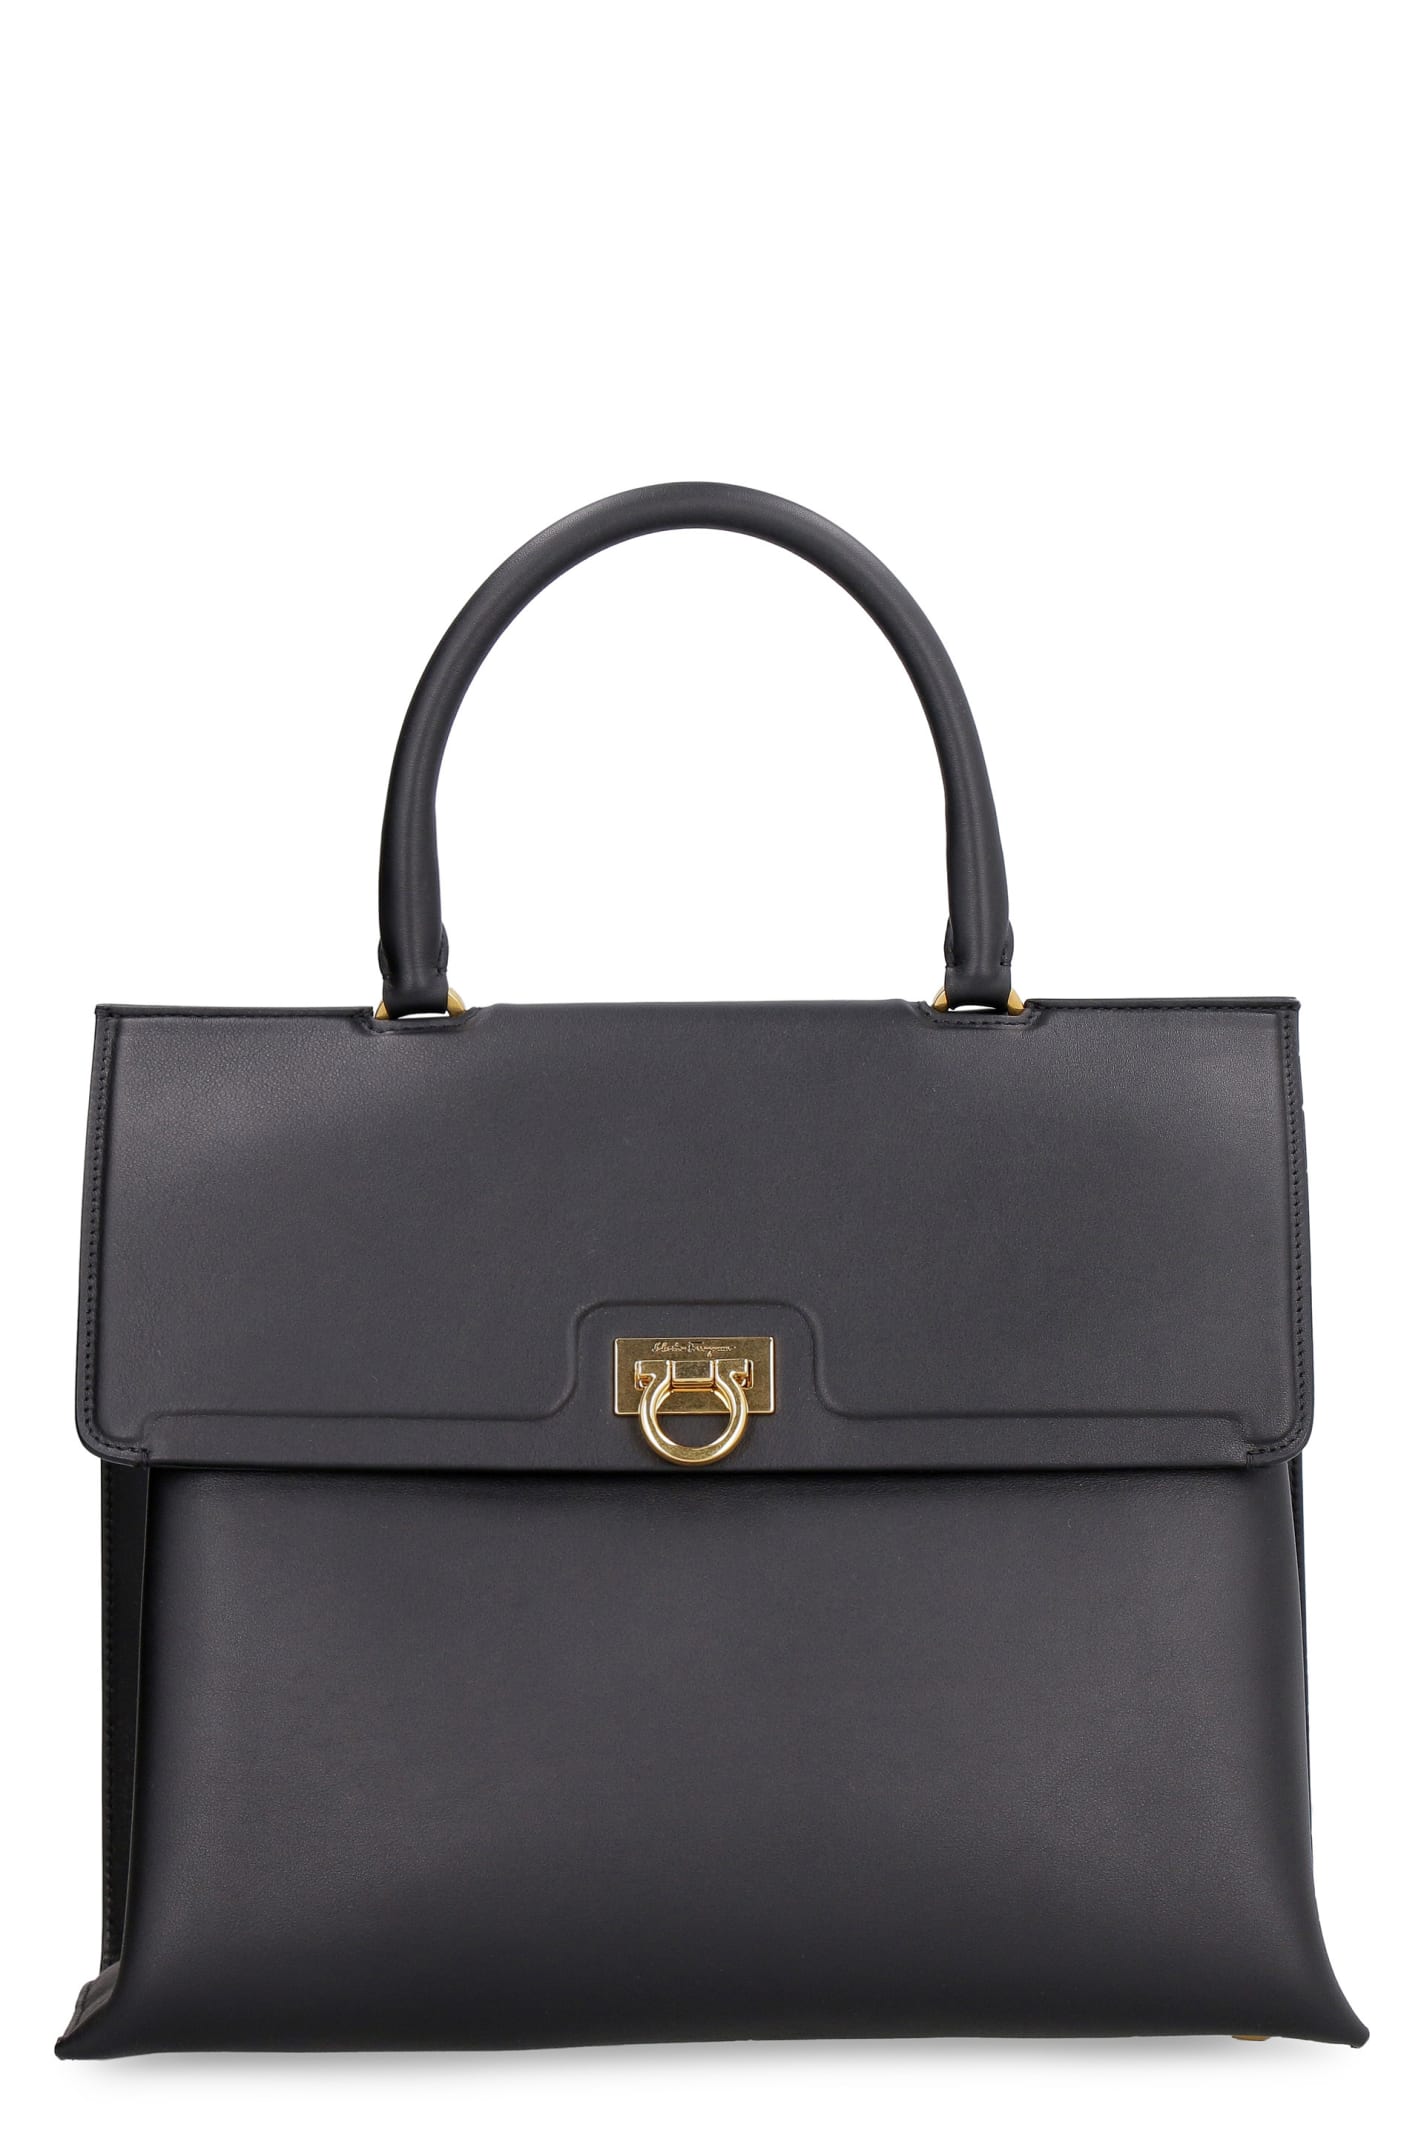 Salvatore Ferragamo Trifolio Leather Handbag